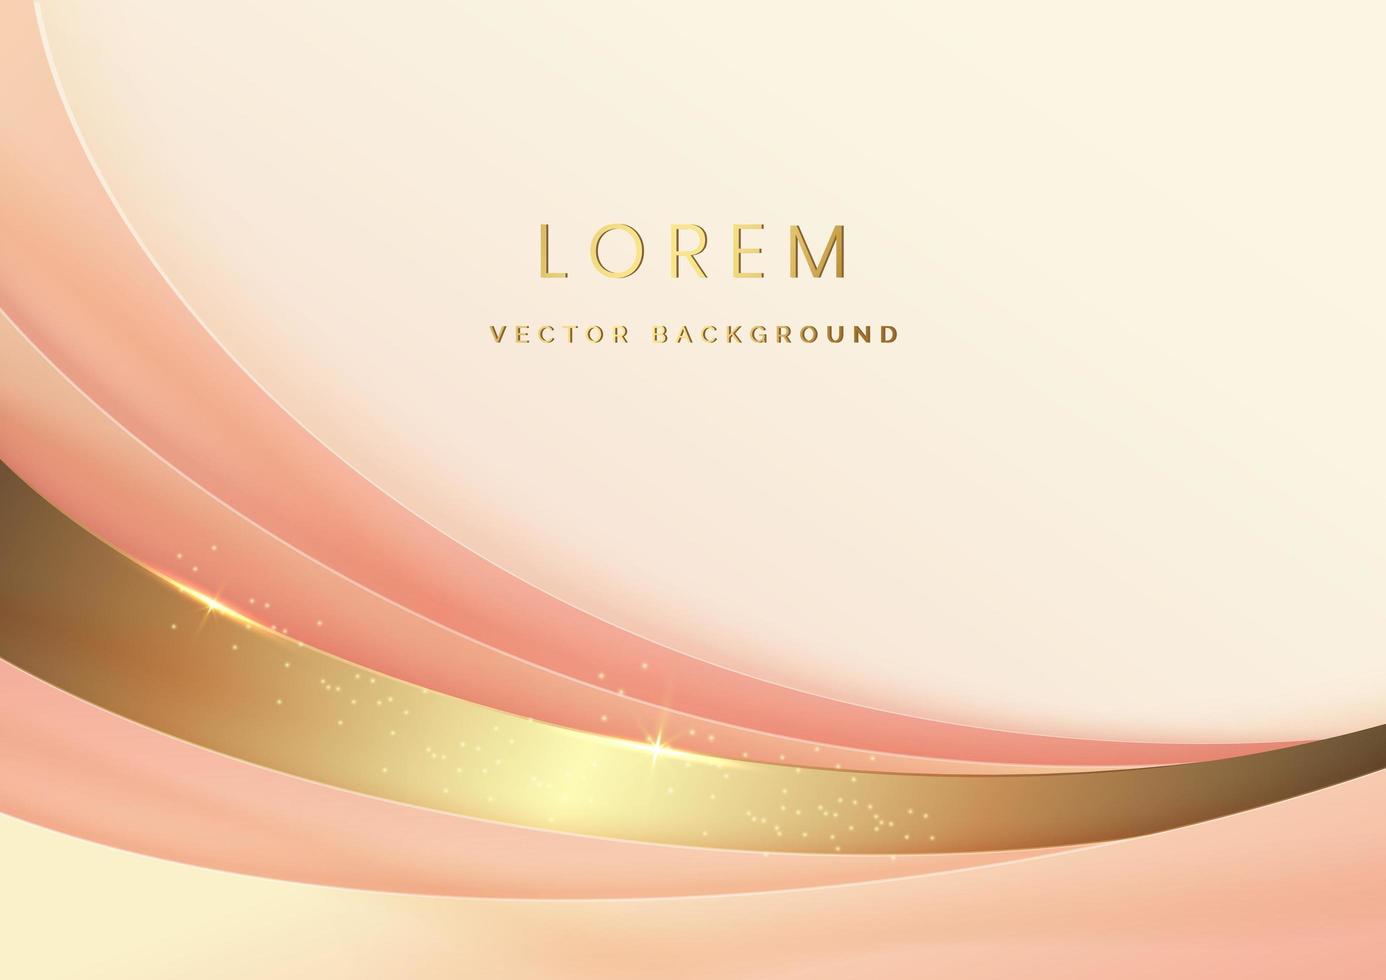 Fondo abstracto de capas curvas de oro y rosa suave en 3d con efecto de iluminación y brillo con espacio para copiar texto. estilo de diseño de lujo. vector